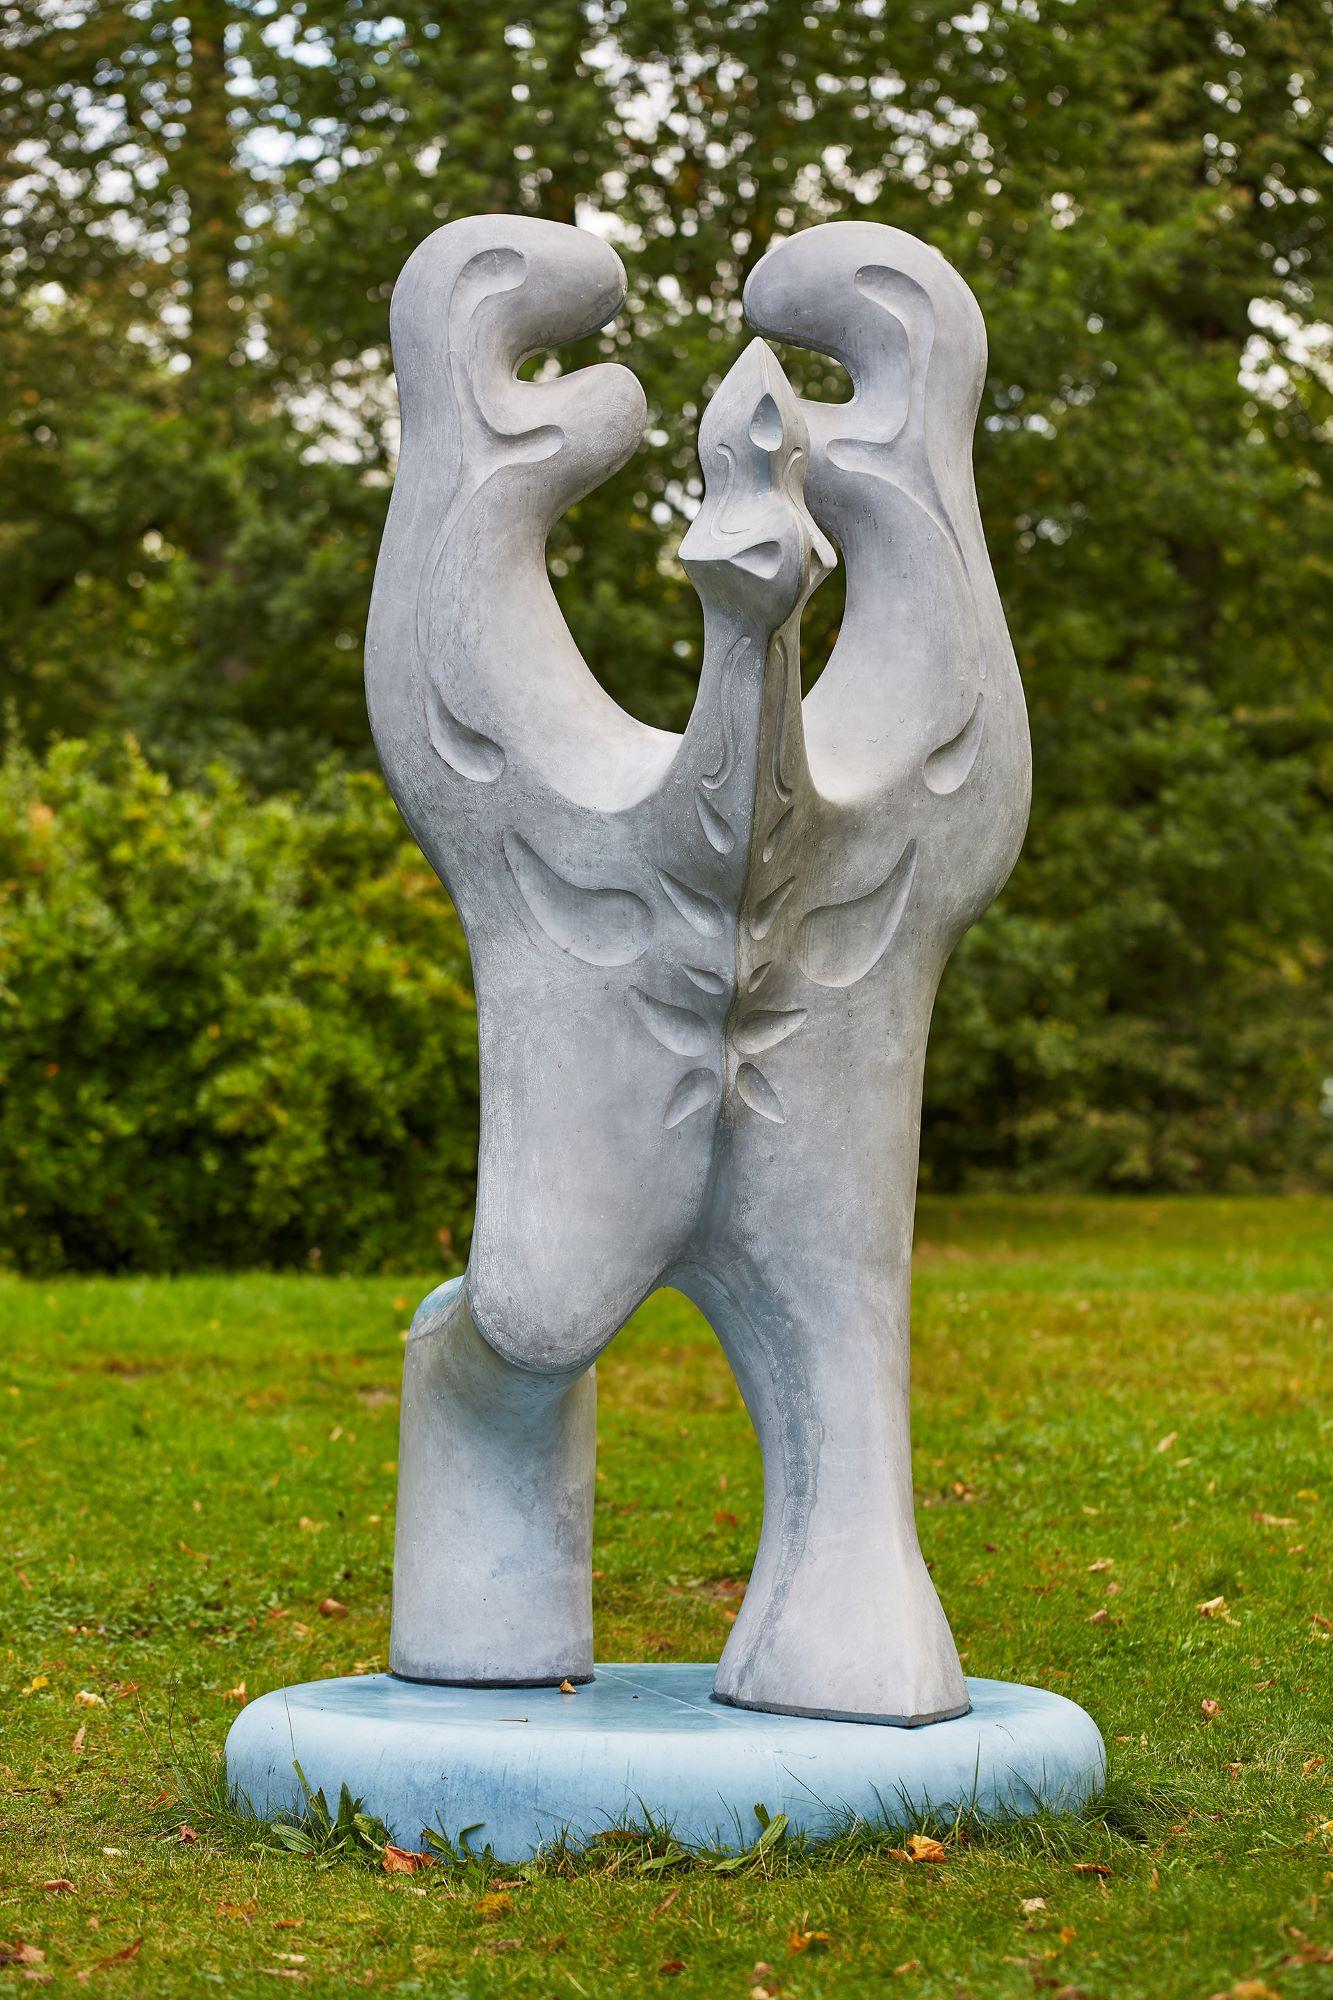 Big Creature by Pavlína Kvita - Contemporary sculpture, futuristic figure, grey For Sale 5